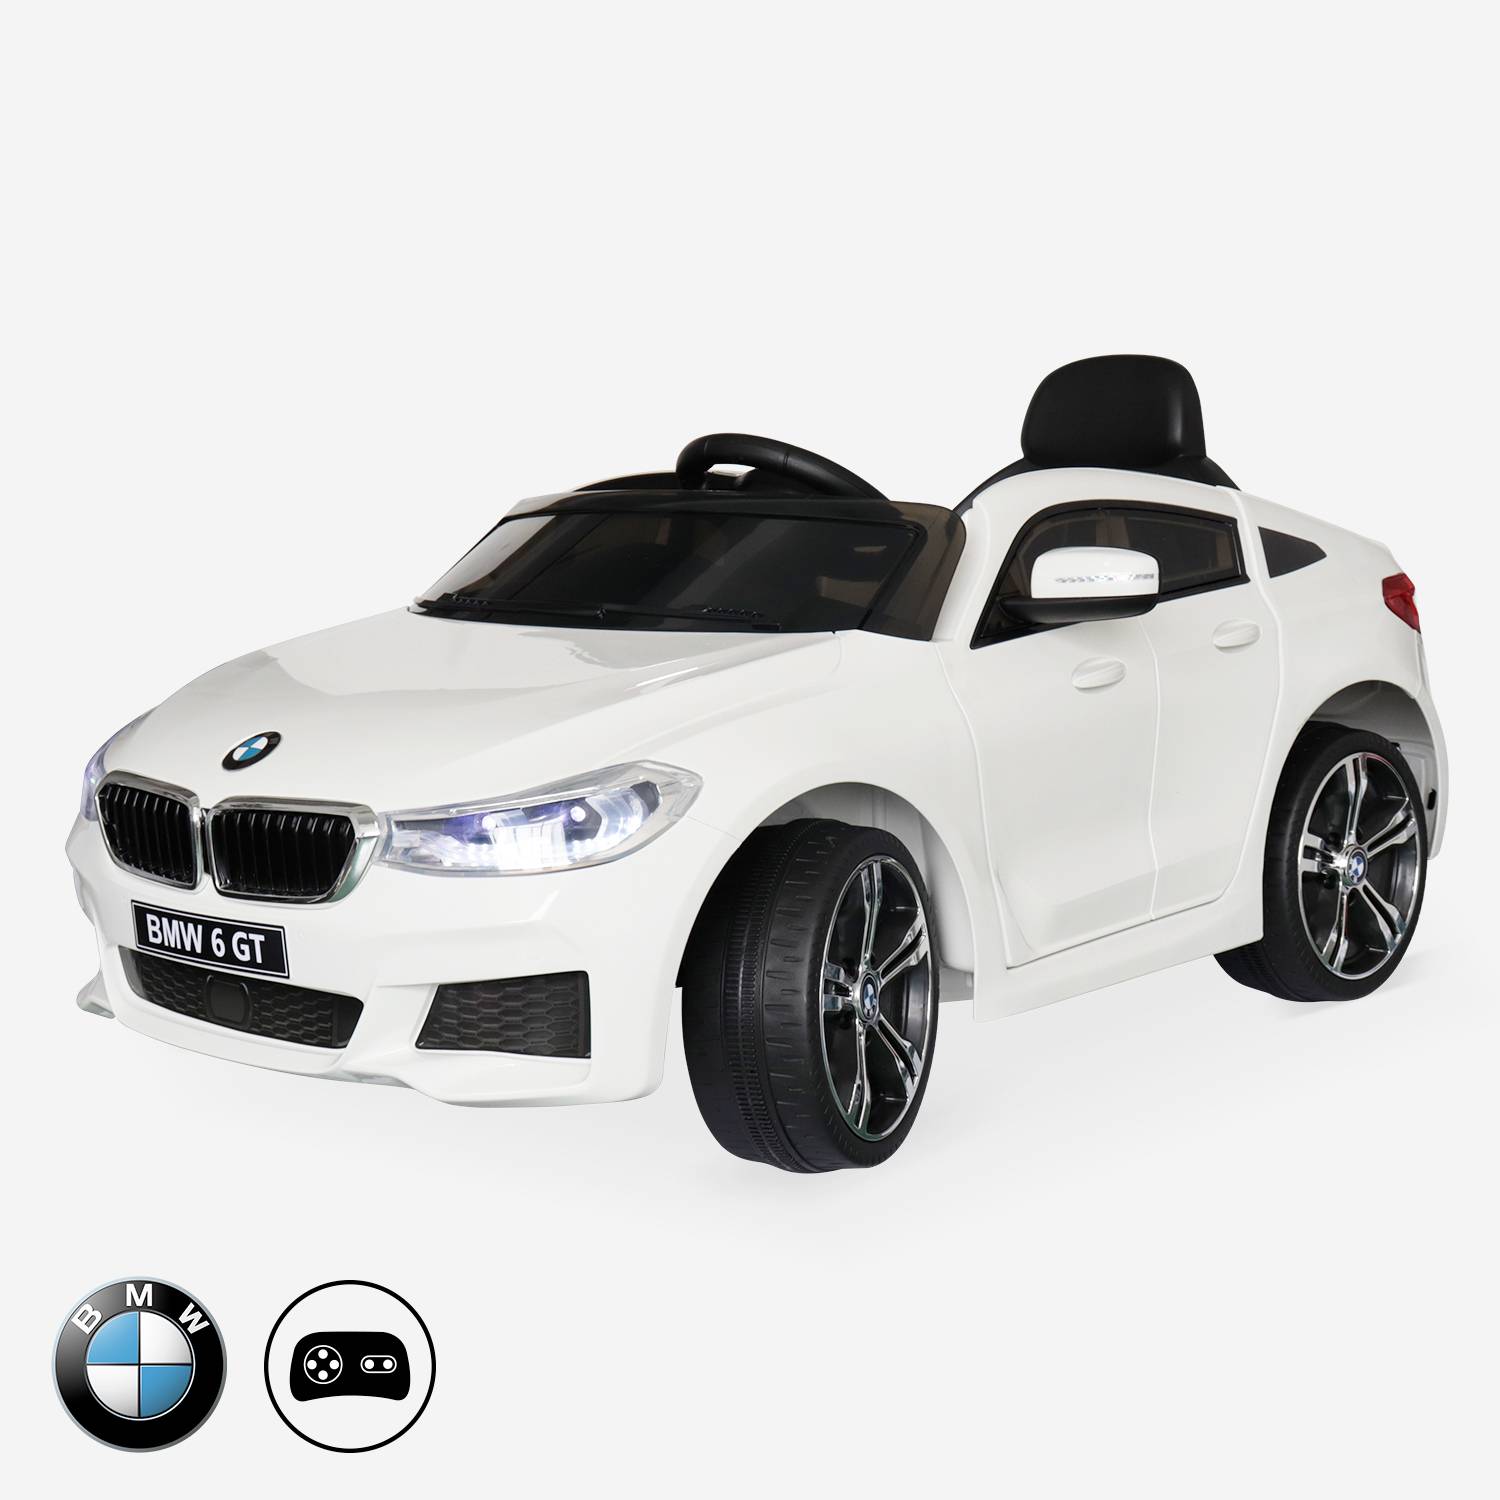 BMW Série 6 GT Gran Turismo blanche, voiture électrique pour enfants 12V 4 Ah, 1 place, avec autoradio et télécommande Photo1